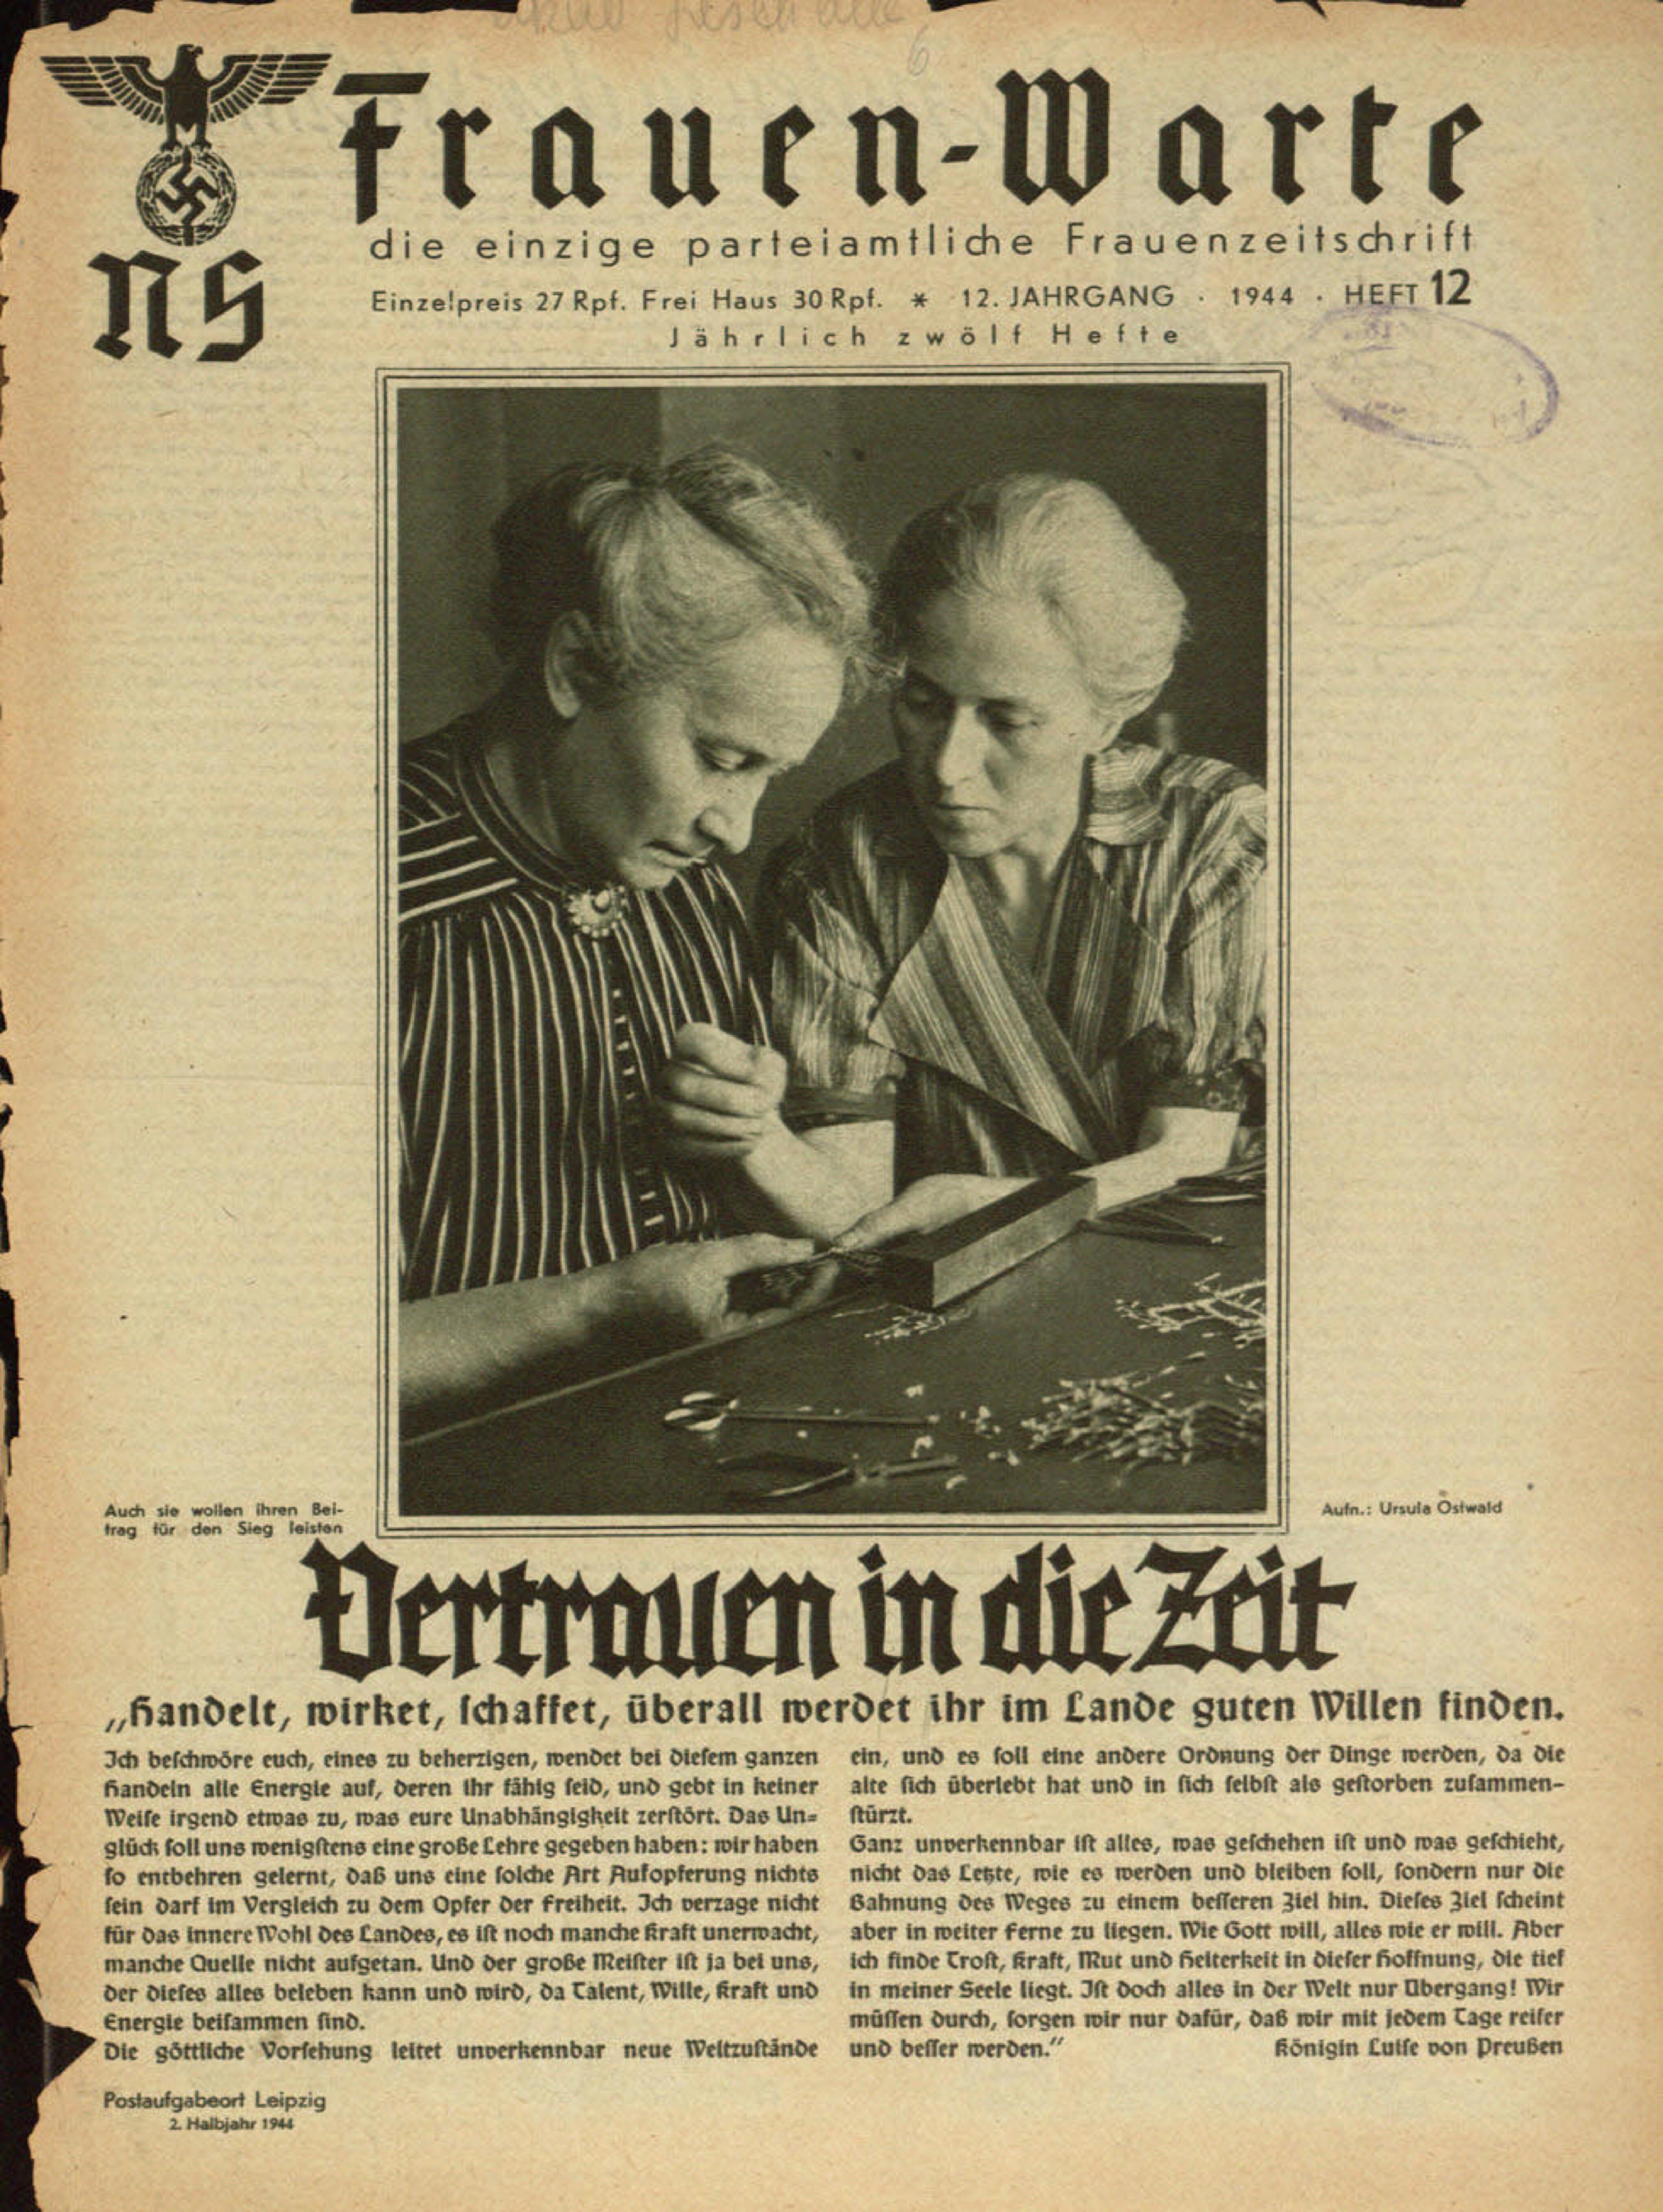 Frauen-Warte 12. Jahrgang Heft 12 (1944, 12 S., Scan, Fraktur)